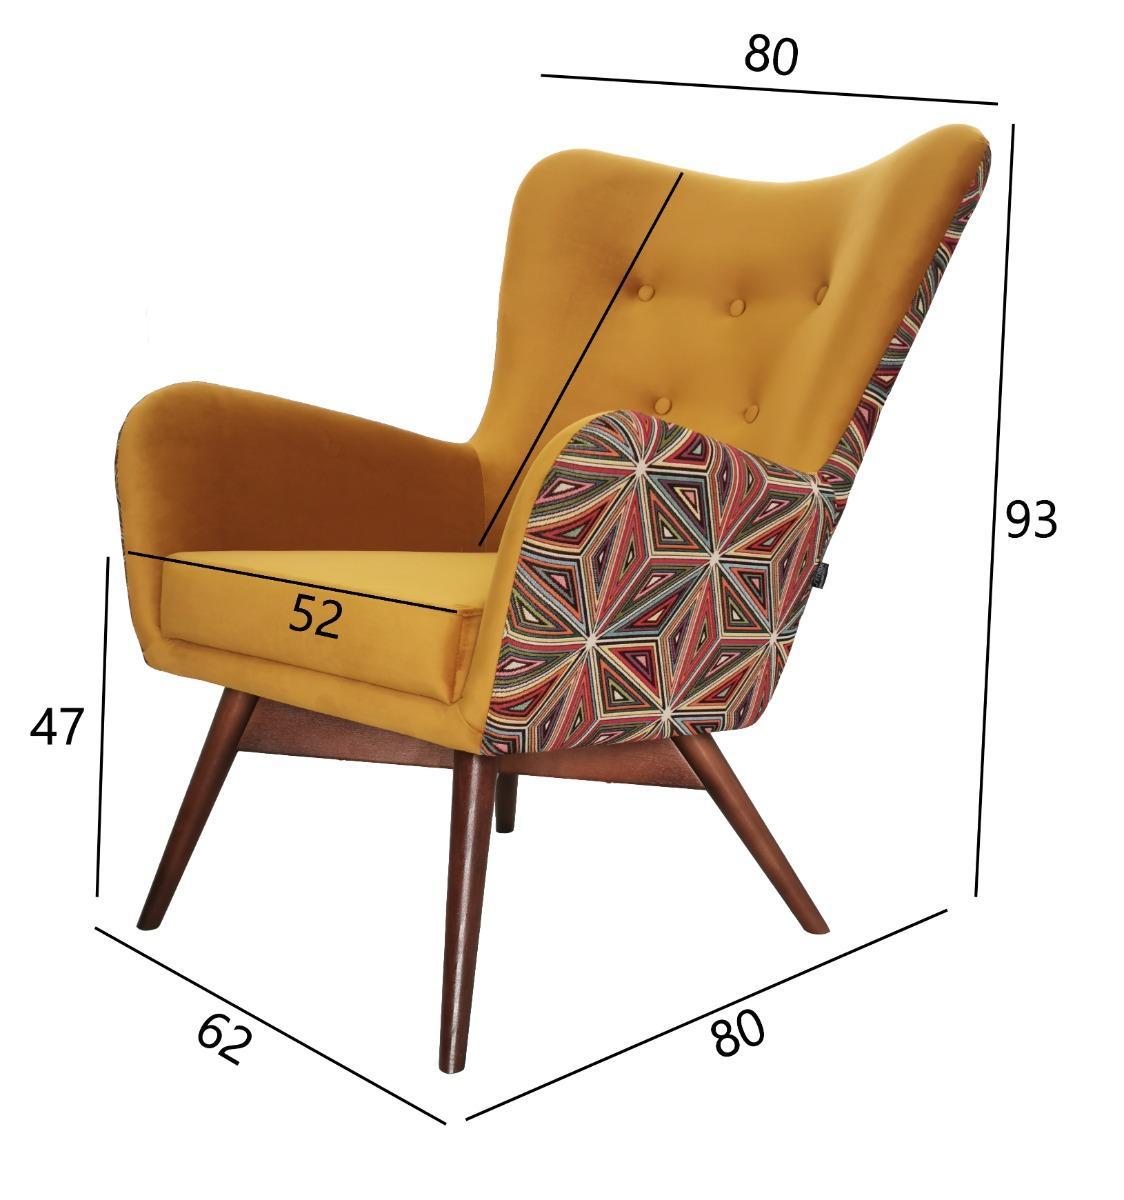 Fotel skandynawski GRANDE 80x93x80 cm żółty we wzory malawi do salonu nr. 4